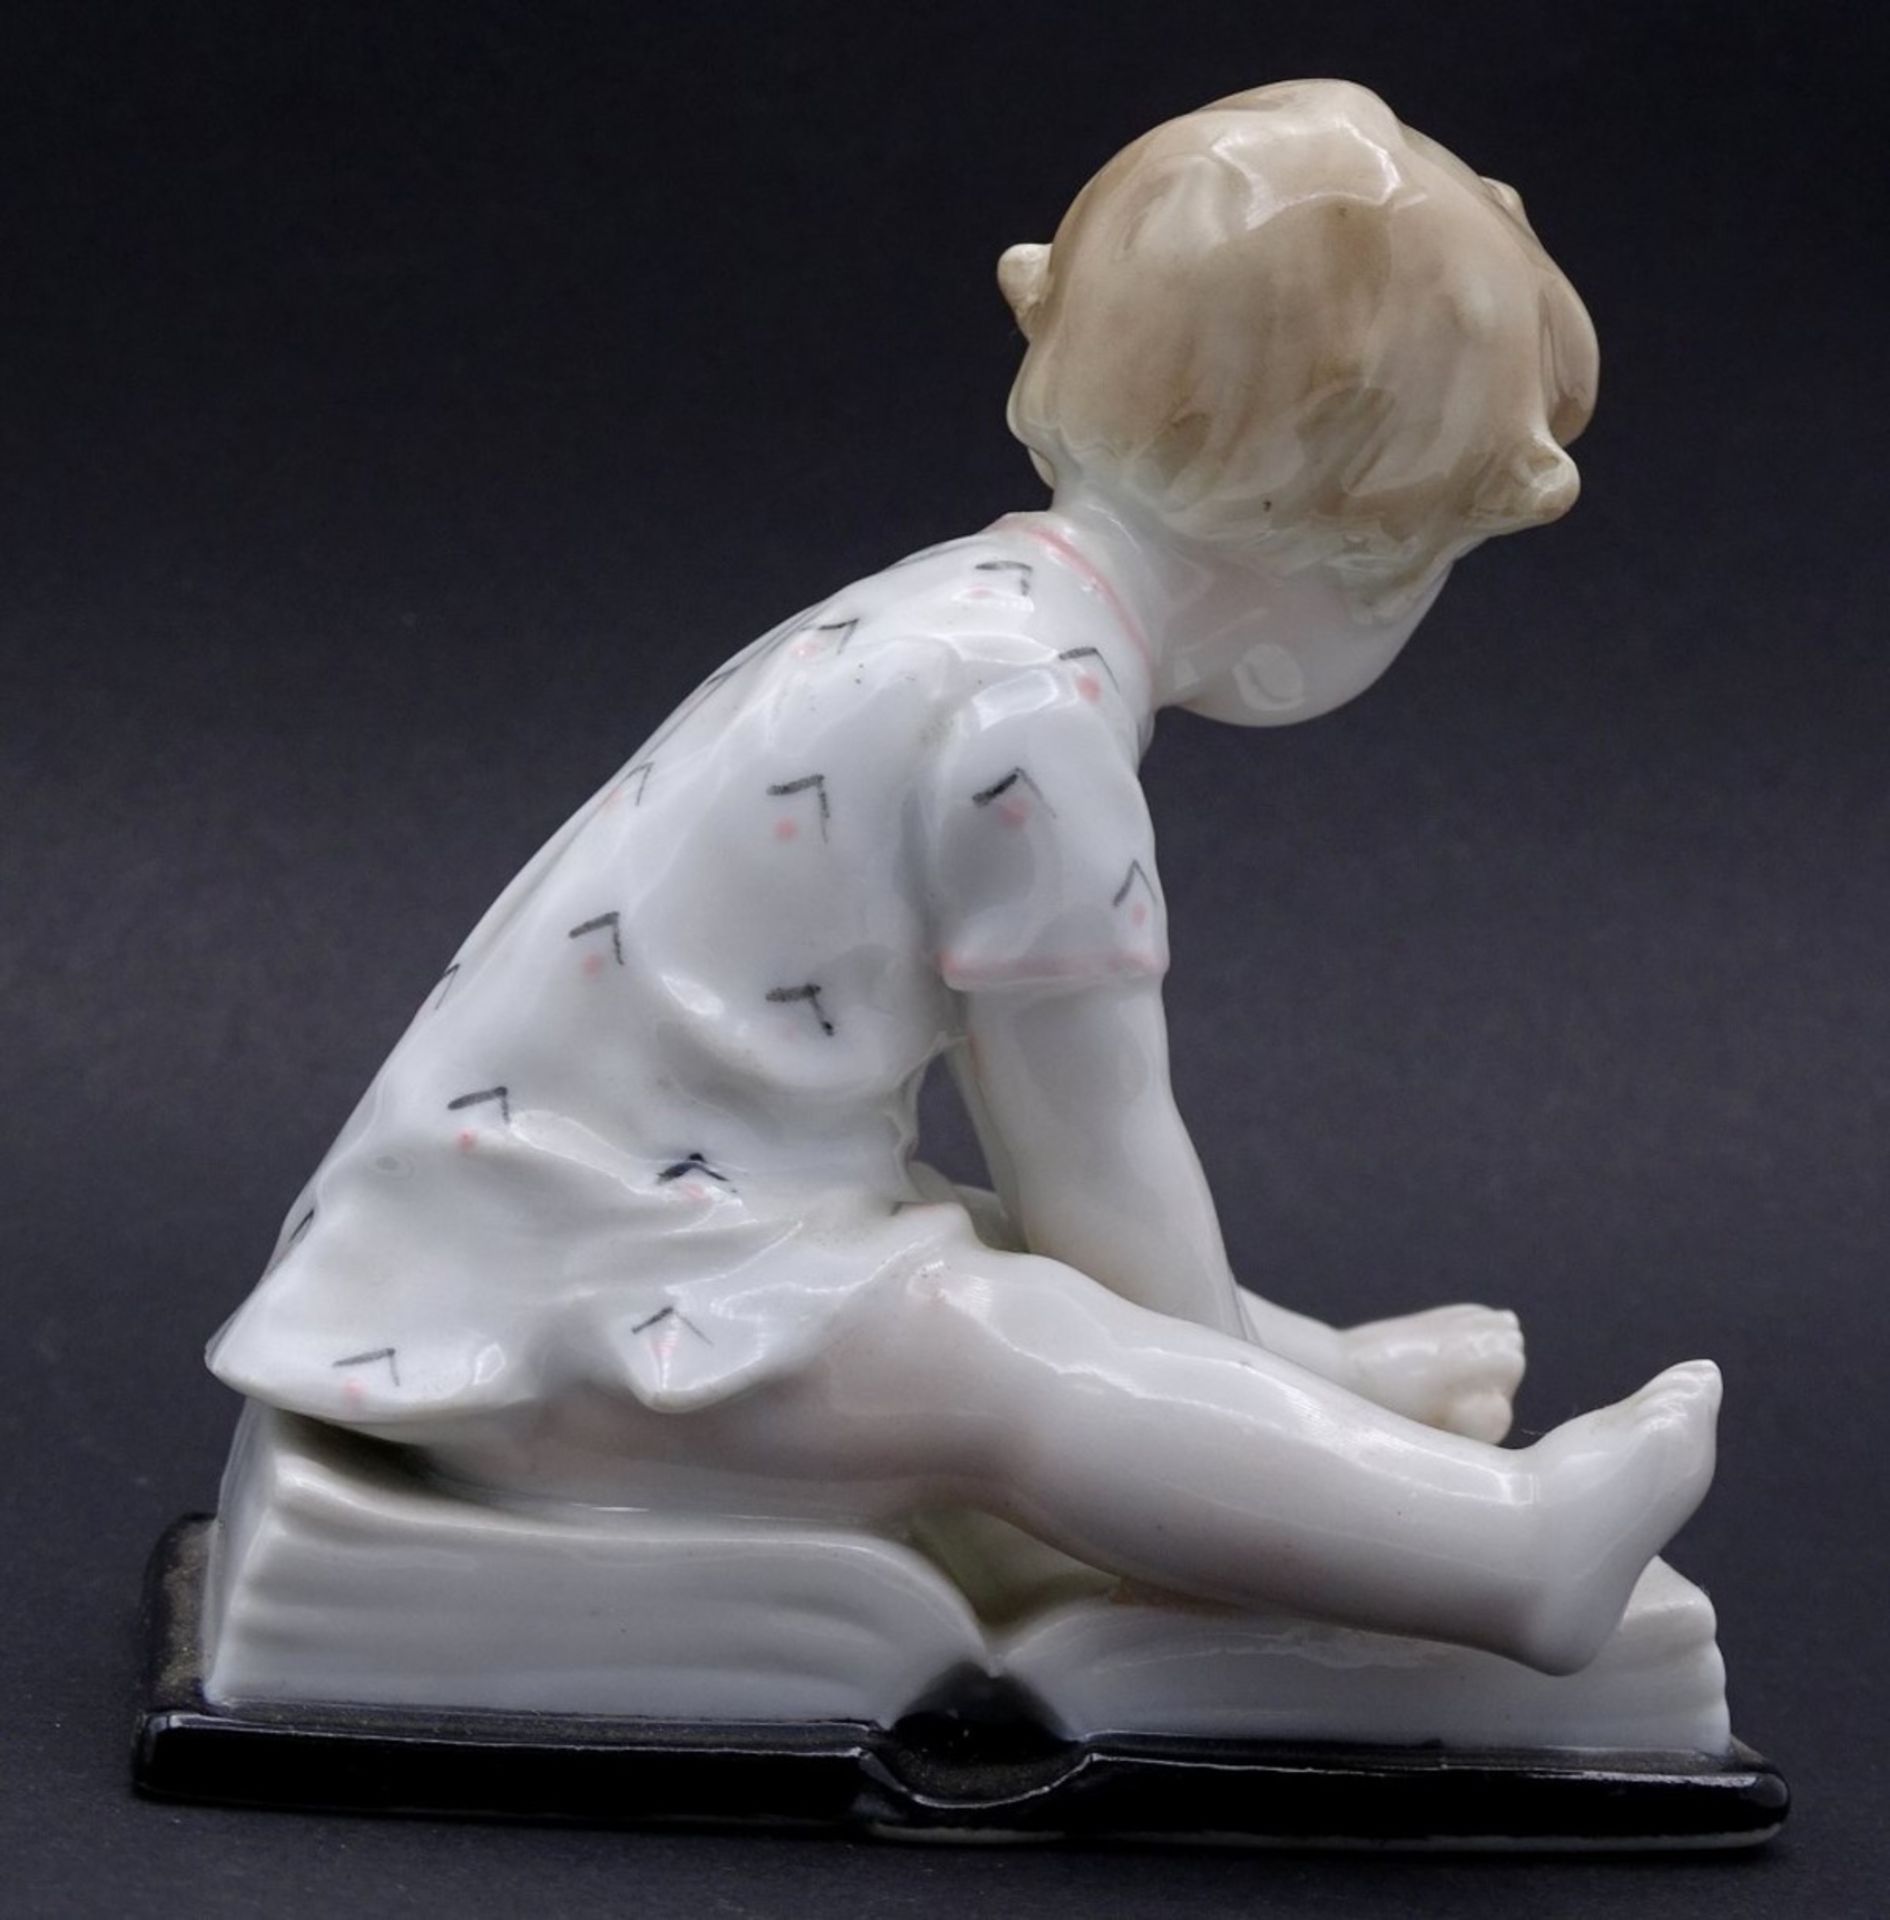 Porzellan Figur "Ens Volkstedt" Kind auf Buch sitzend, H-10cm - Bild 3 aus 6